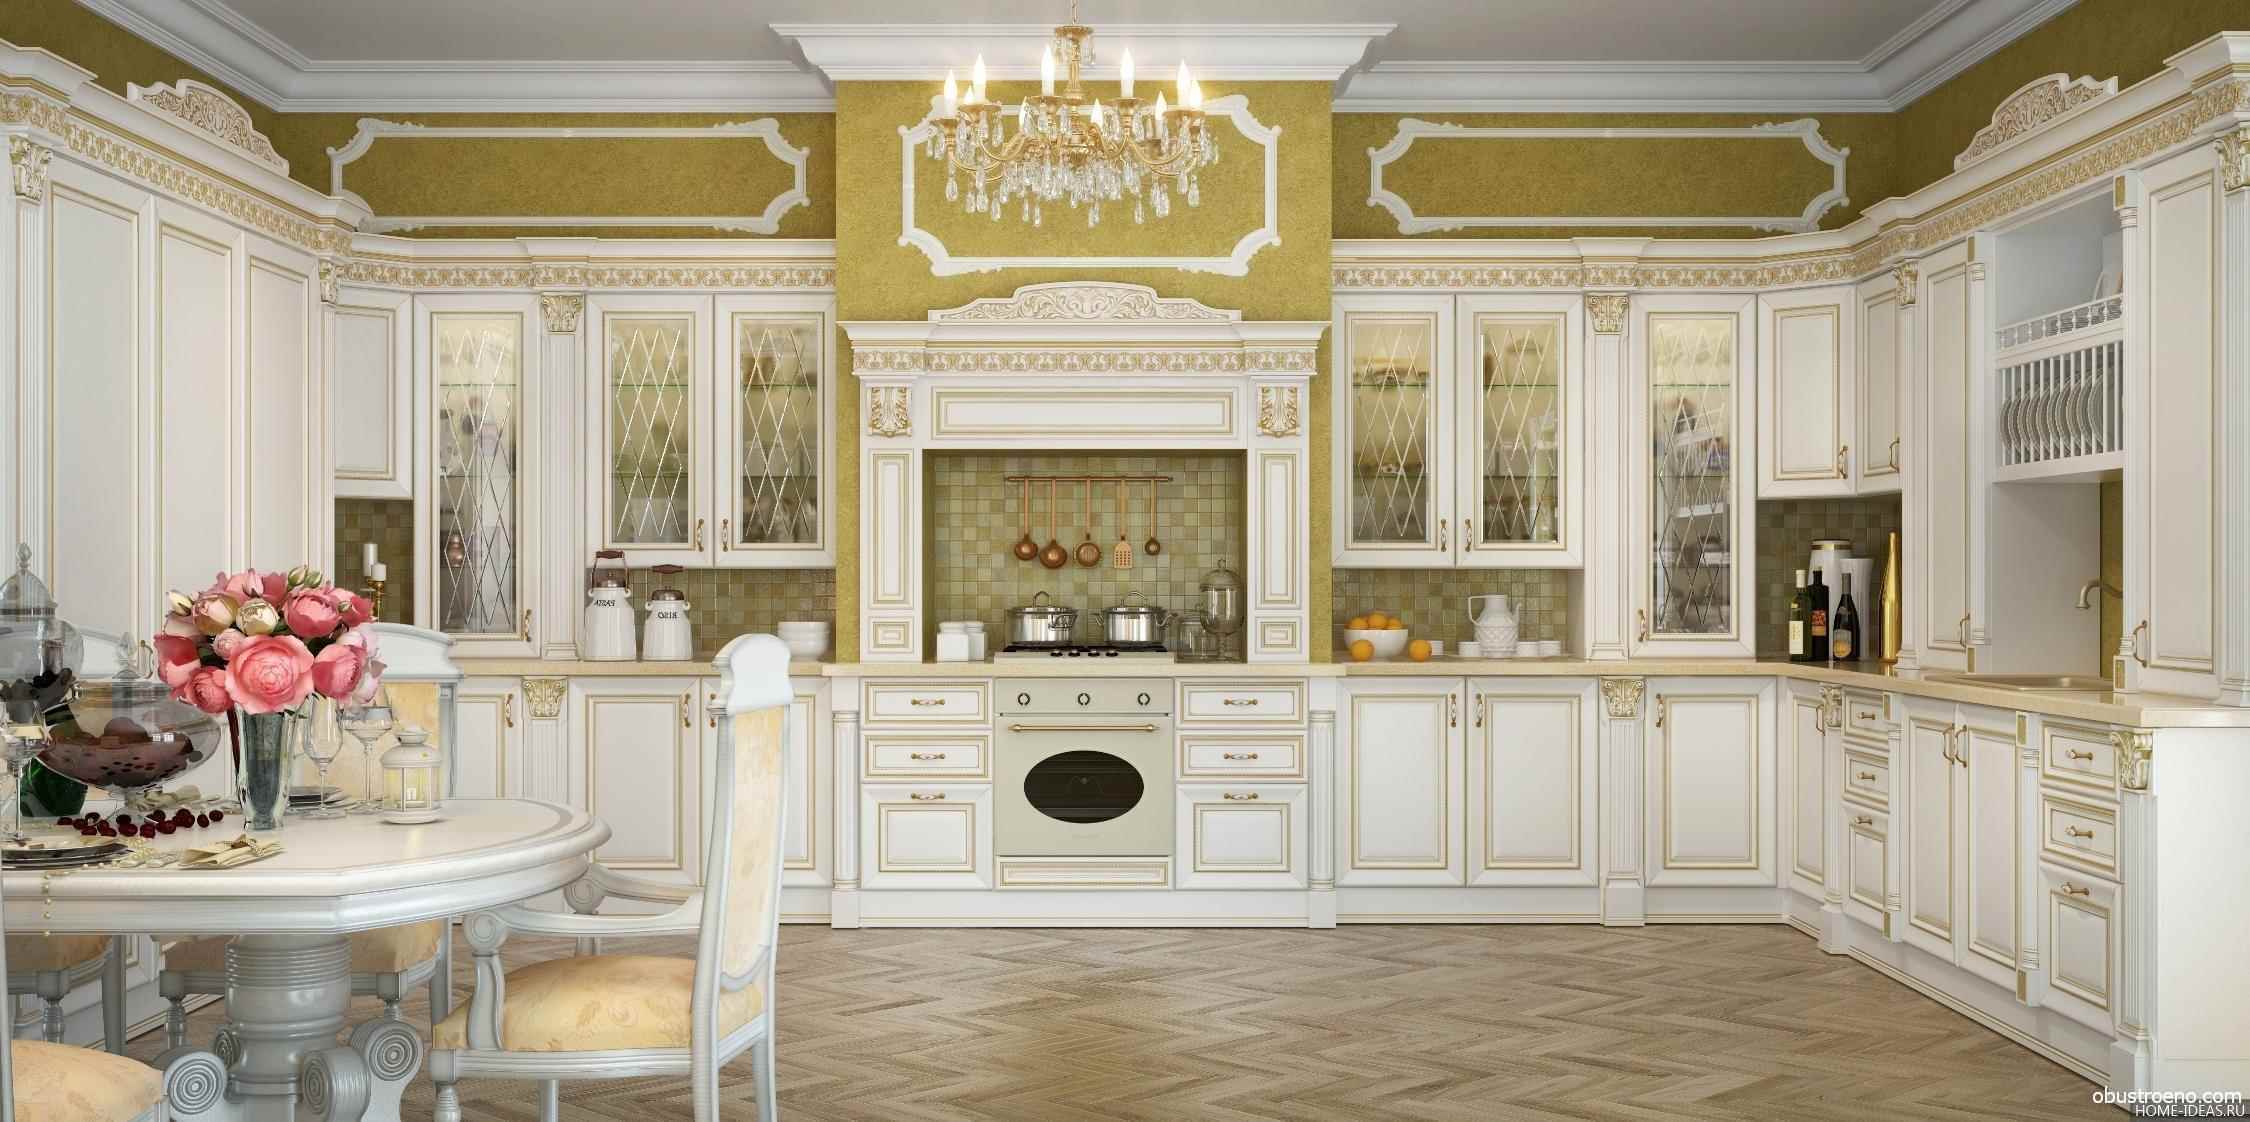 ideja svijetle dekor kuhinje u klasičnom stilu